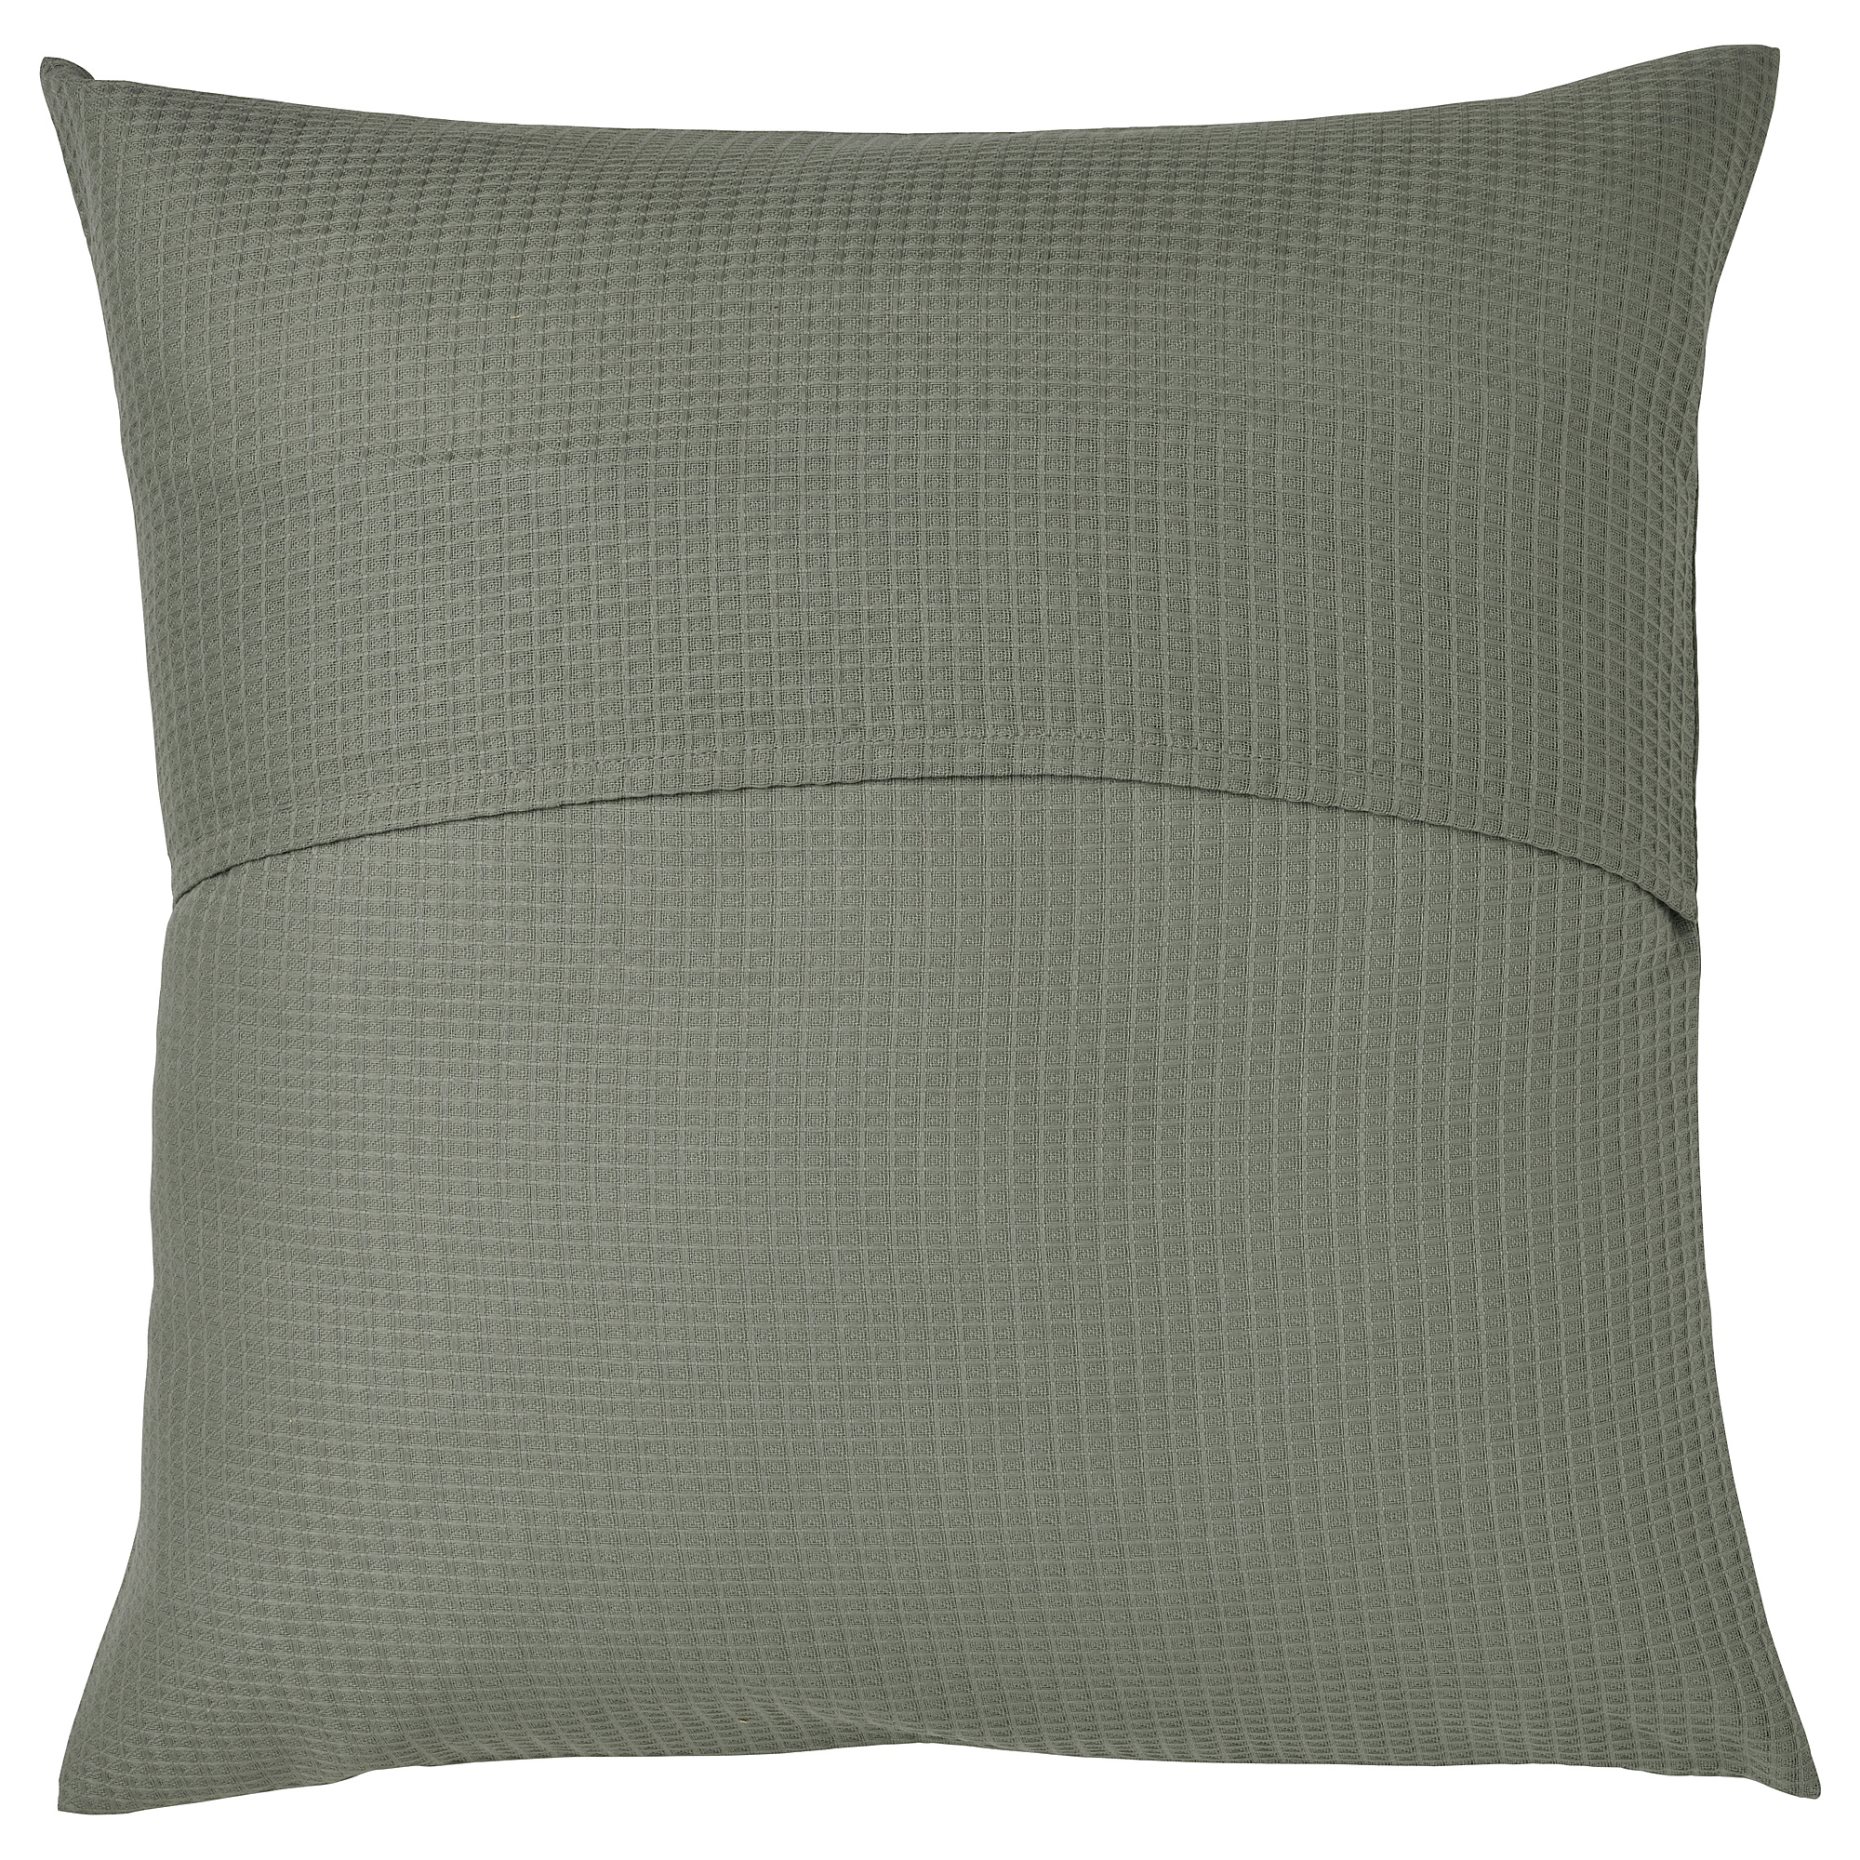 EBBATILDA, cushion cover, 50x50 cm, 305.268.93